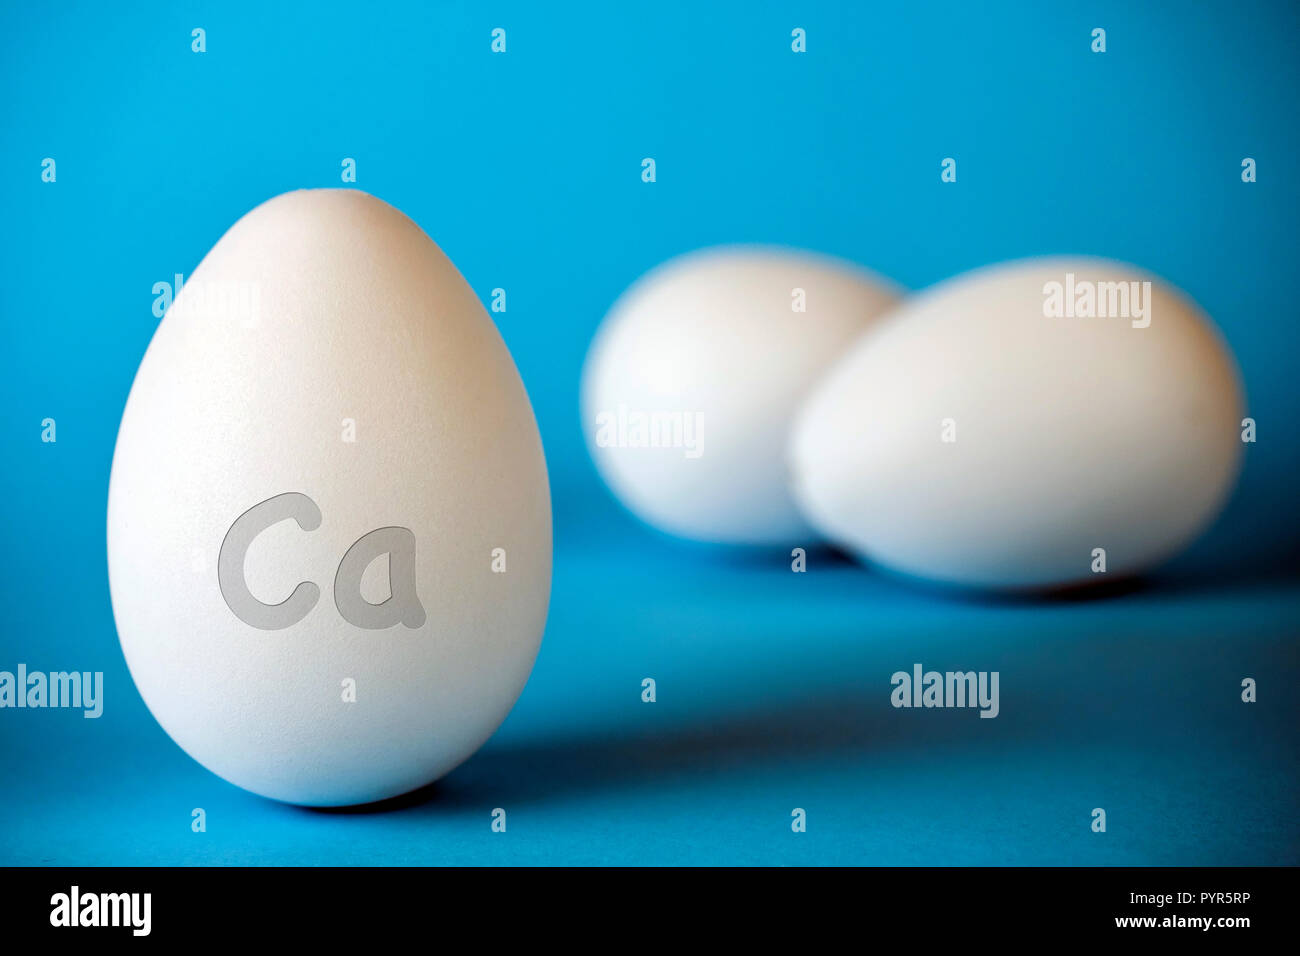 Los huevos de gallina han CA calcio para fortalecer los huesos, aislado en fondo azul. Foto de stock